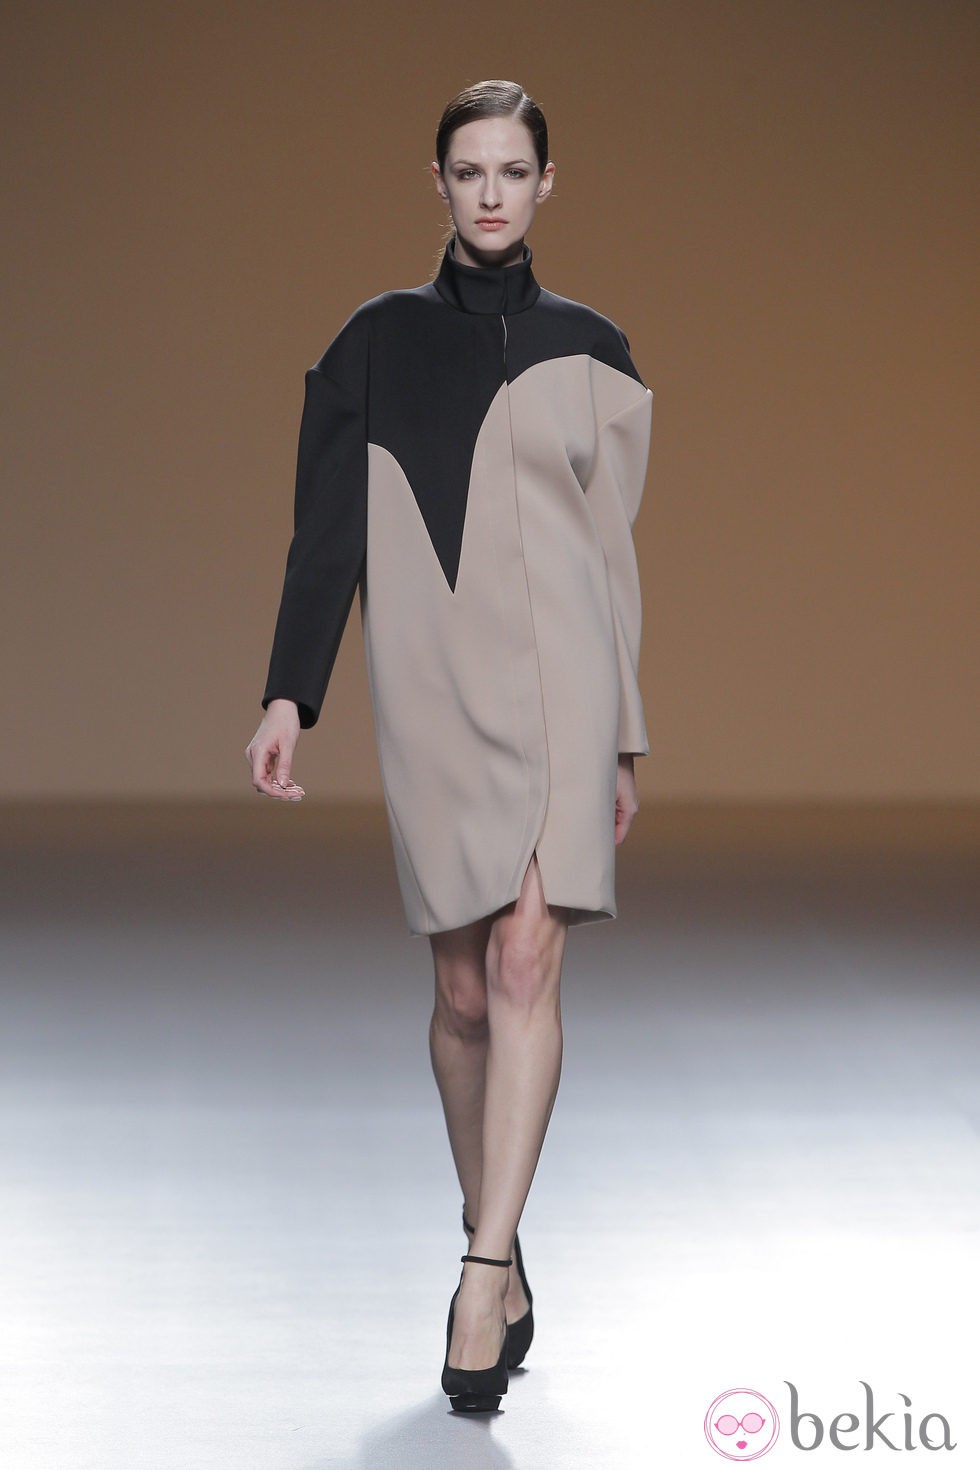 Abrigo beige y negro de la colección otoño/invierno 2013/2014 de A.A. de Amaya Arzuaga en Madrid Fashion Week